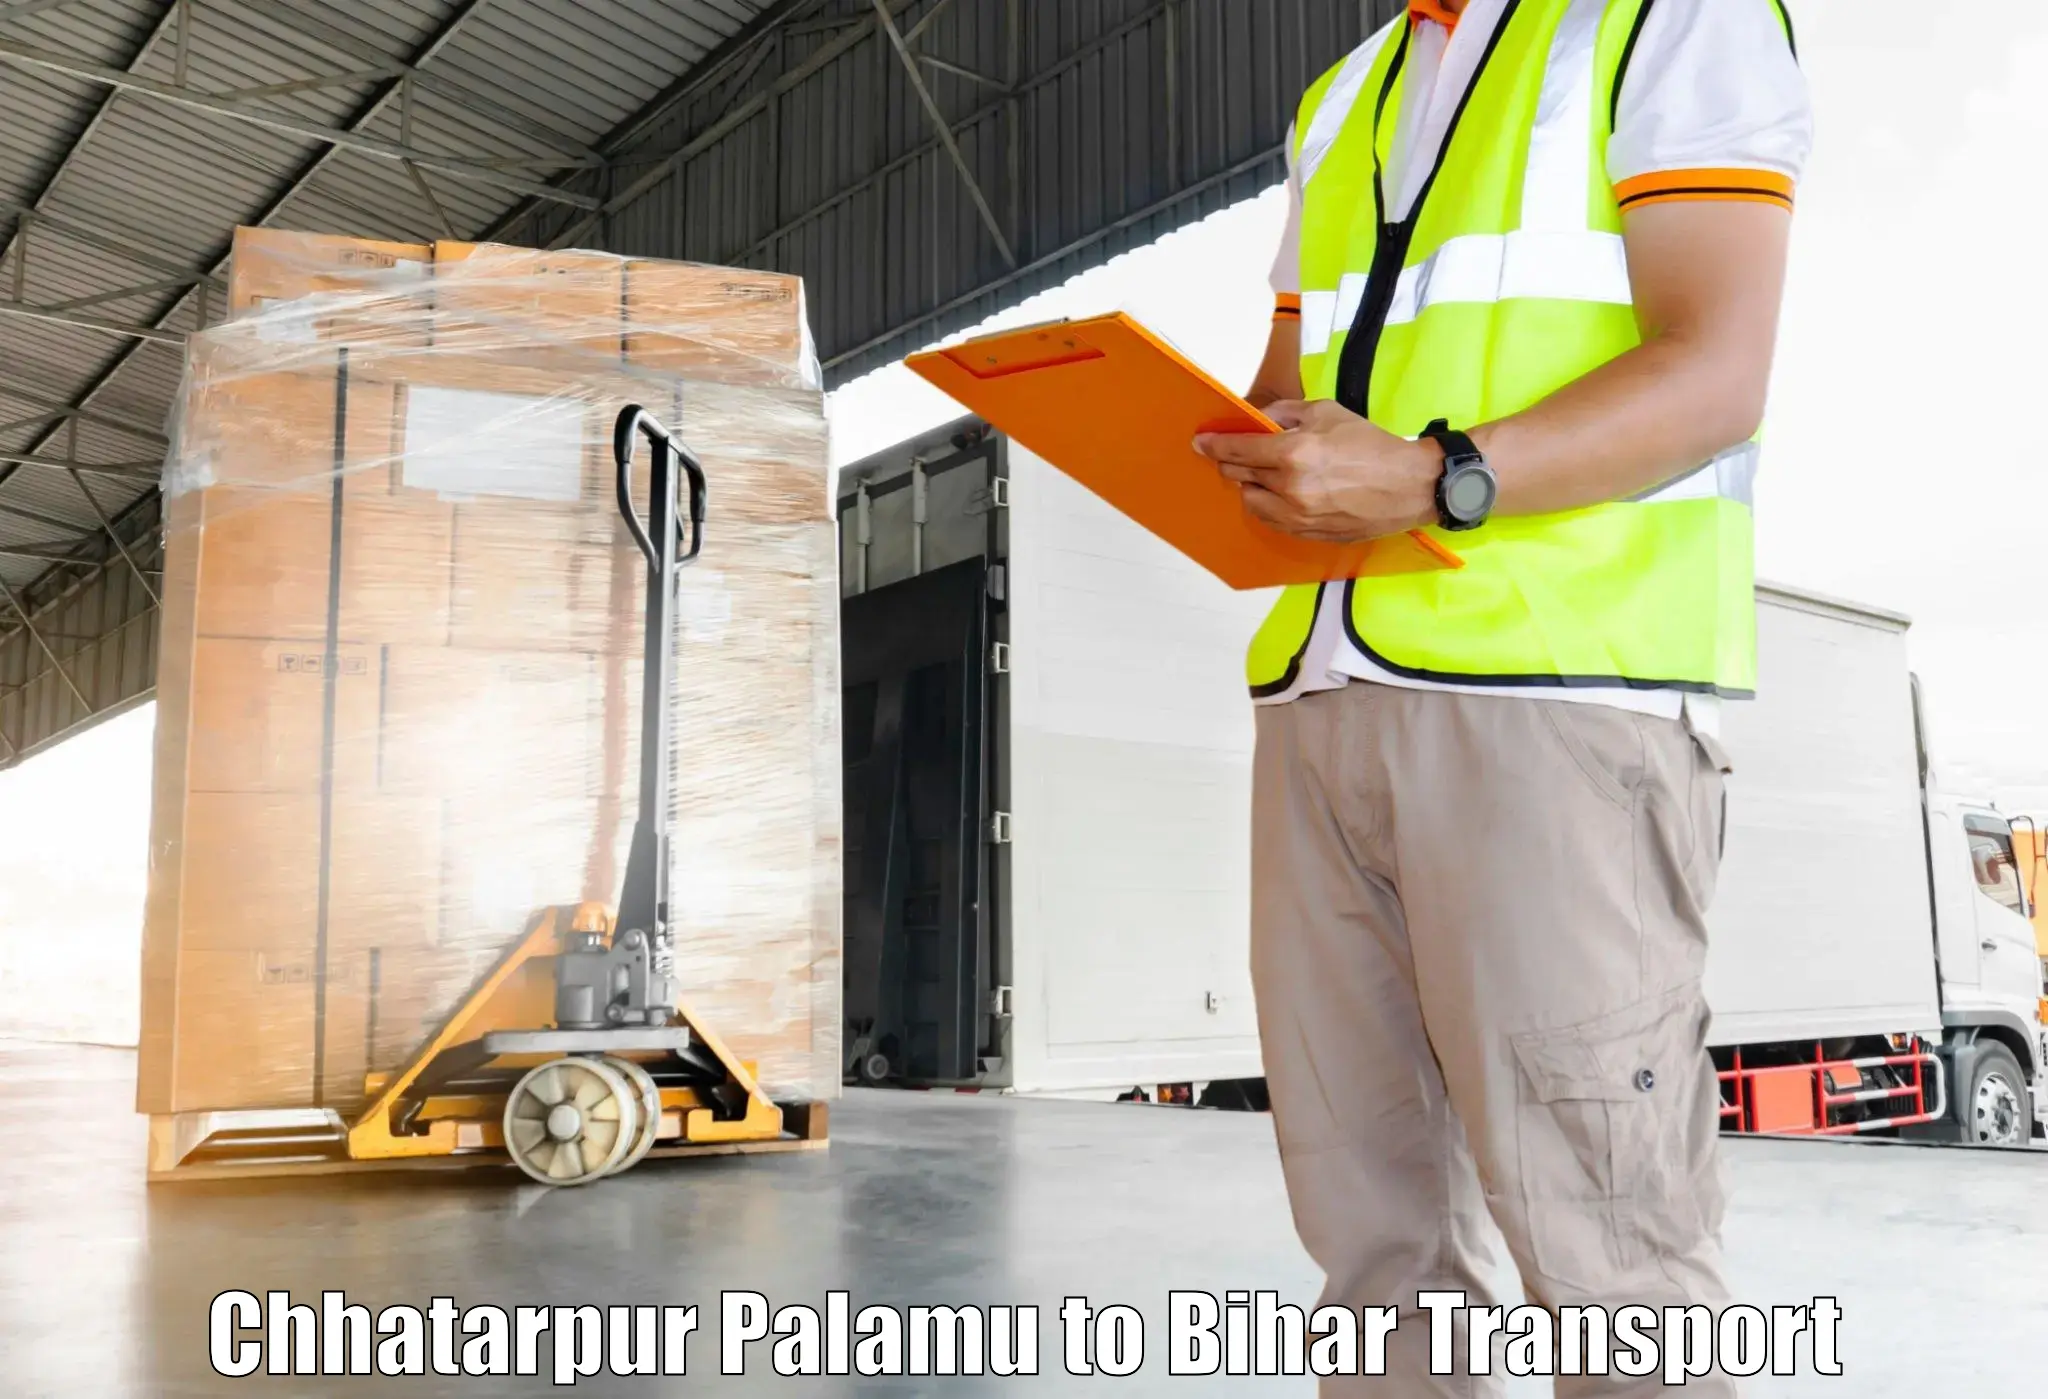 Daily parcel service transport Chhatarpur Palamu to Daudnagar